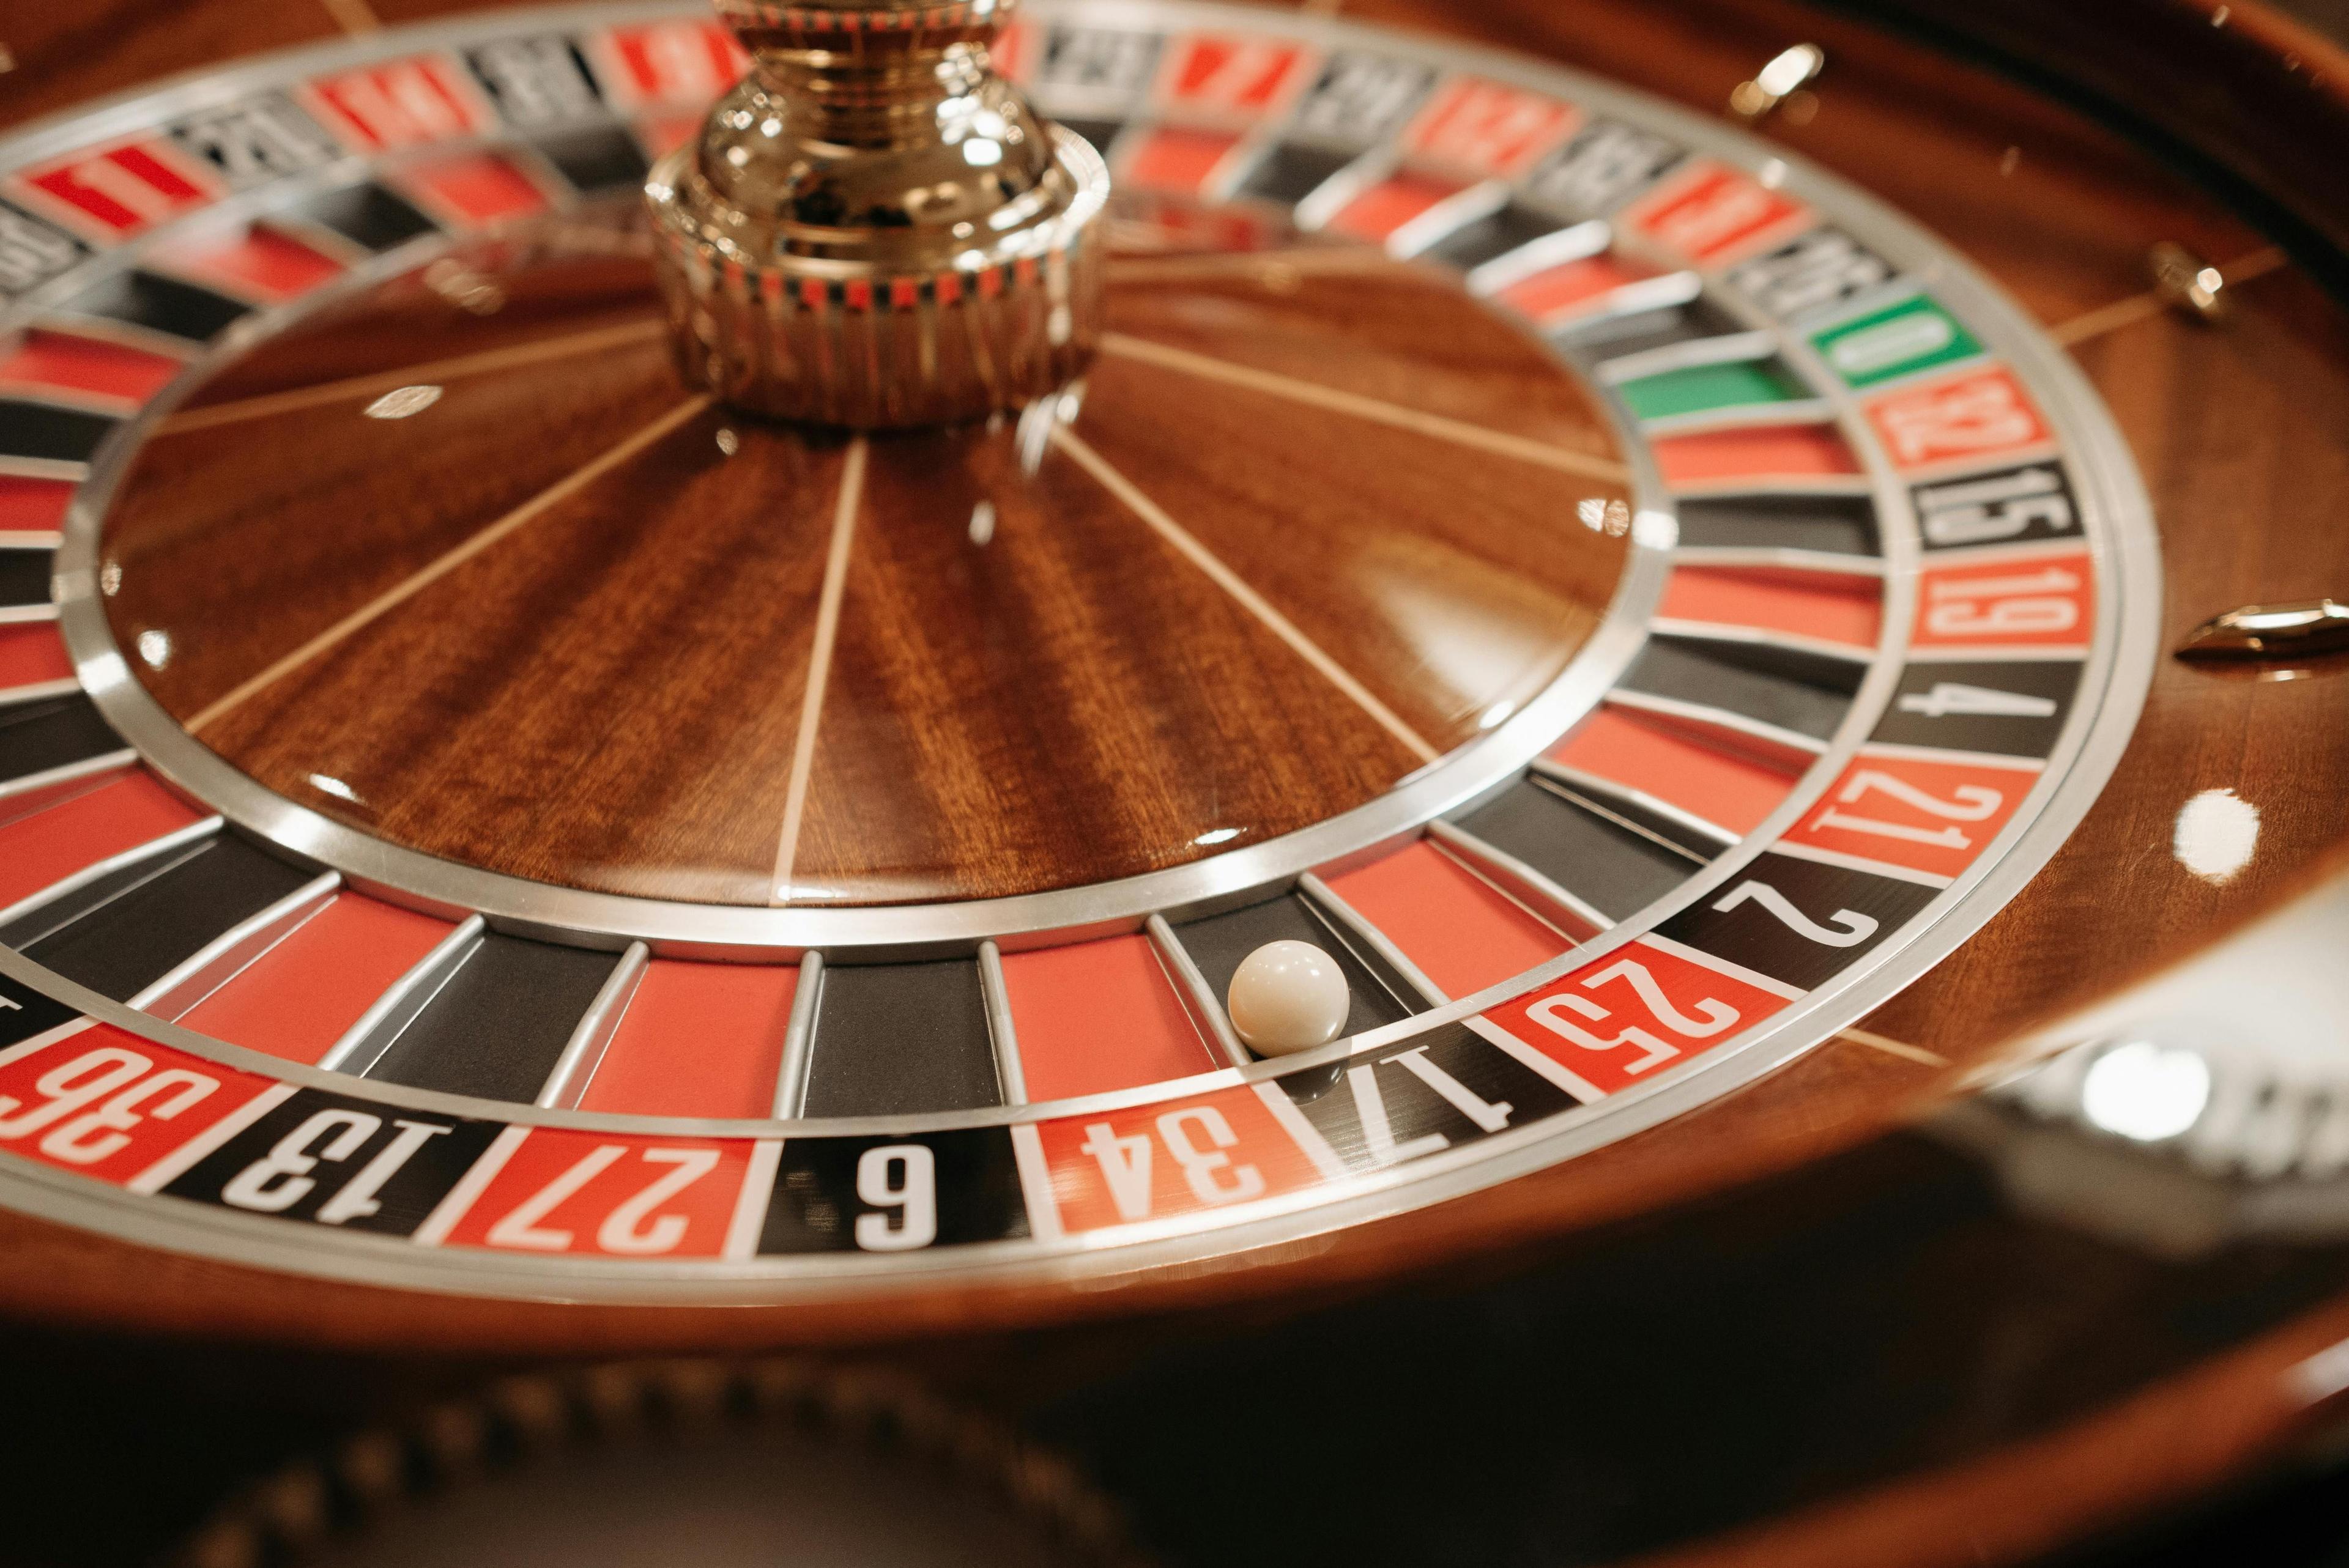 Нестареющая классика: Самые популярные настольные игры в онлайн-казино